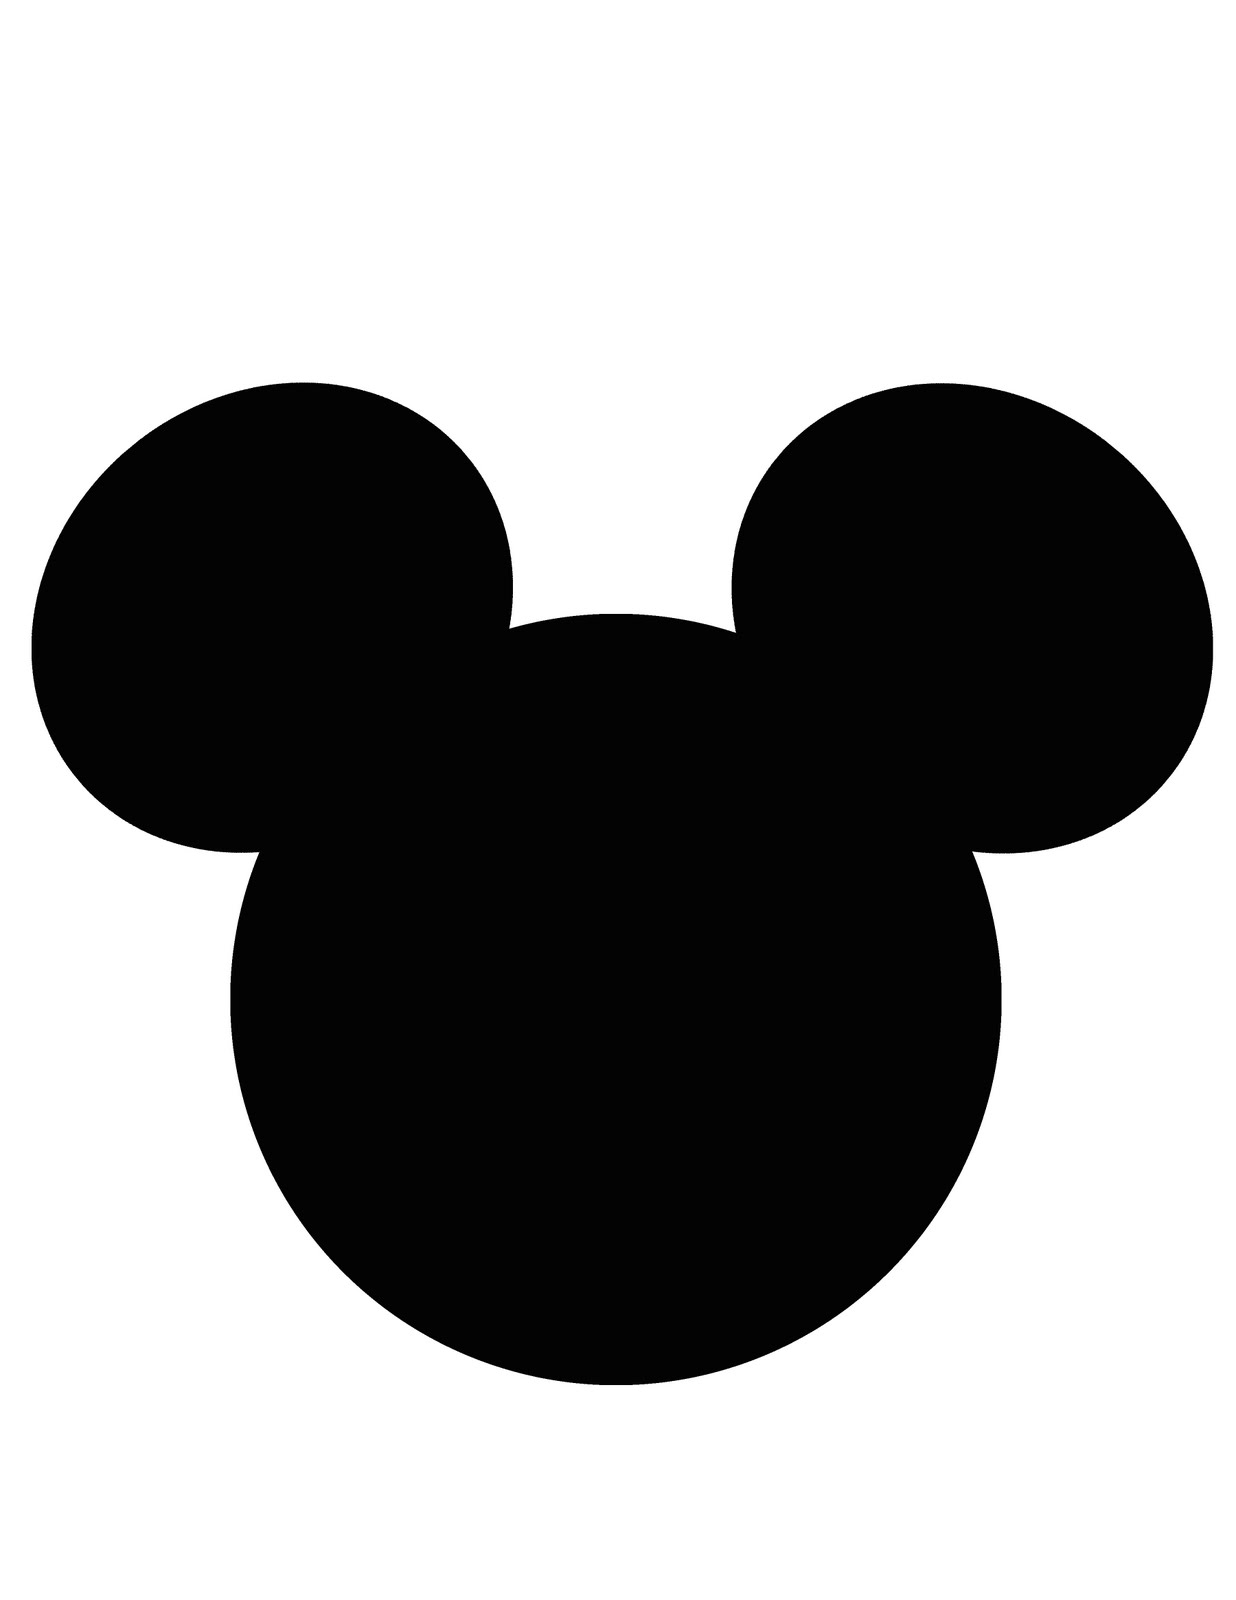 Mickey Mouse Printable Template - Printable World Holiday